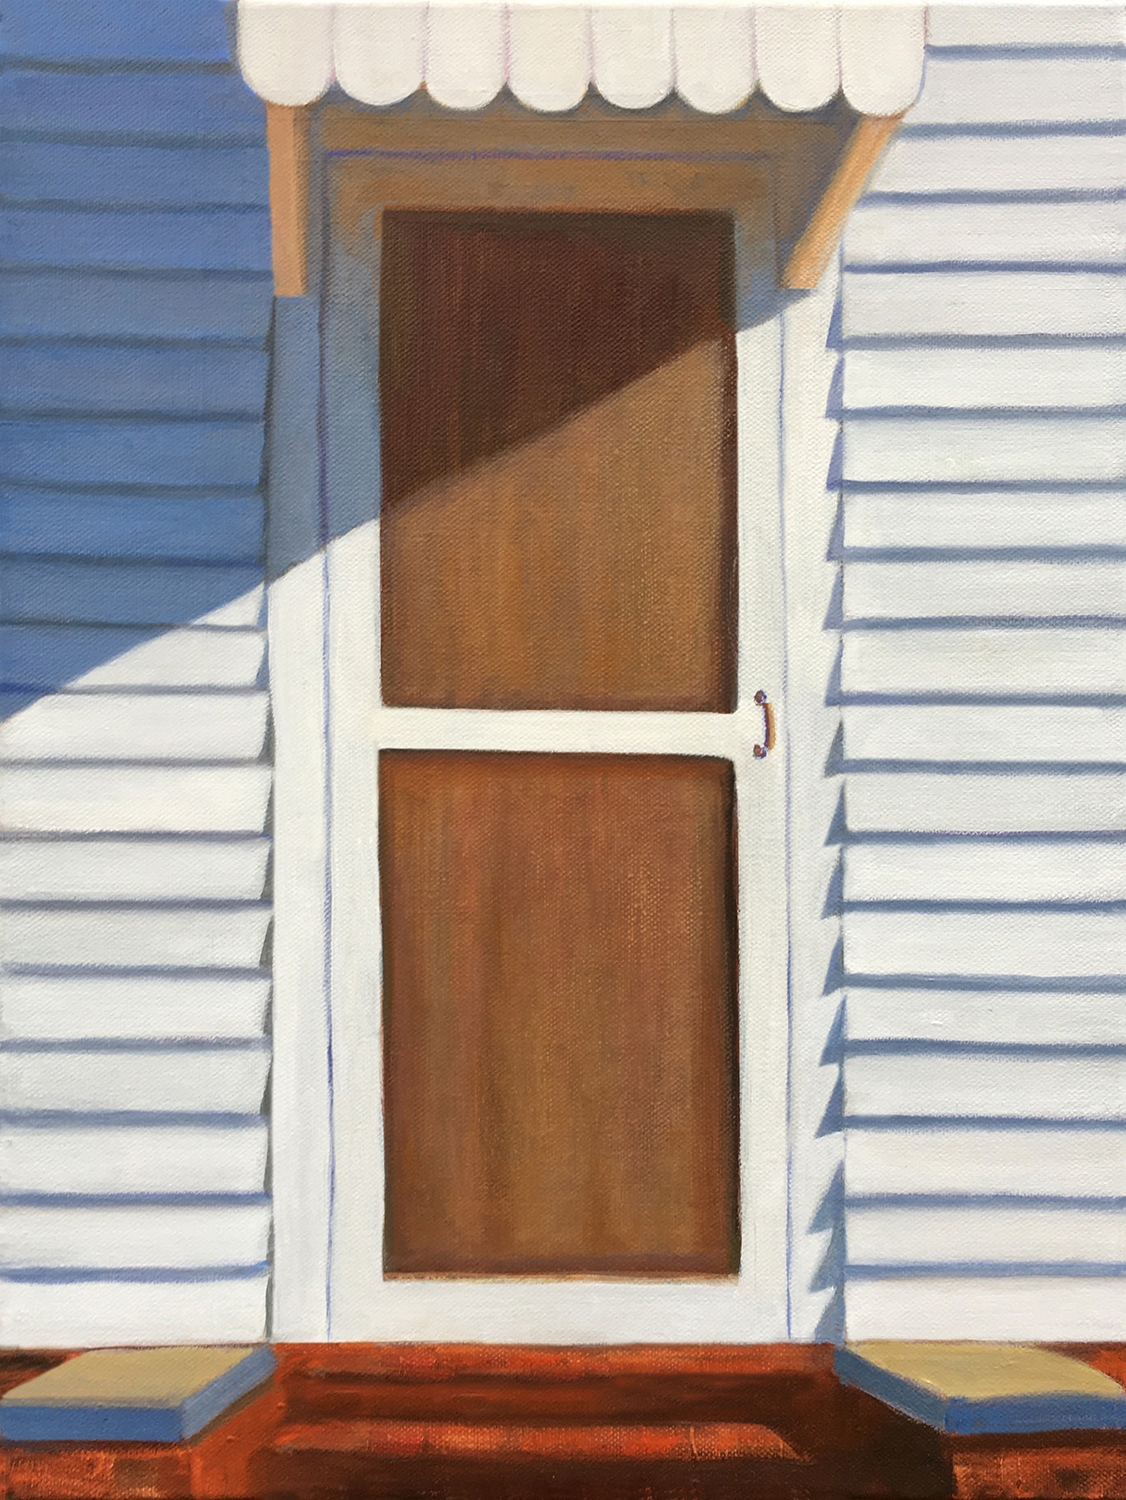 Screen Door Memory by David Davenport 12X16 oil on canvas at Craven Allen Gallery  1400